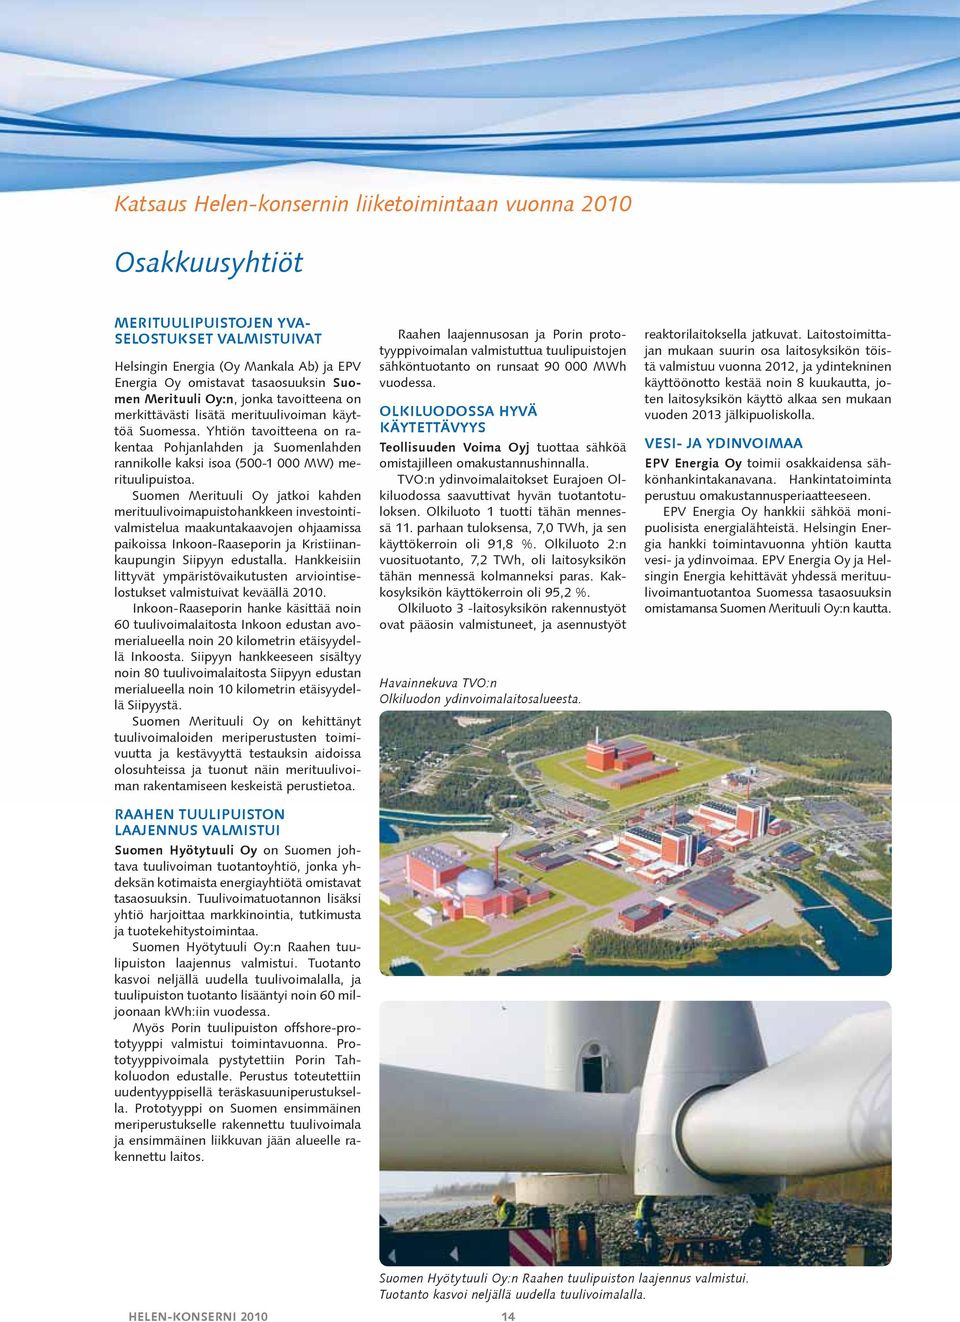 Yhtiön tavoitteena on rakentaa Pohjanlahden ja Suomenlahden rannikolle kaksi isoa (500-1 000 MW) merituulipuistoa.